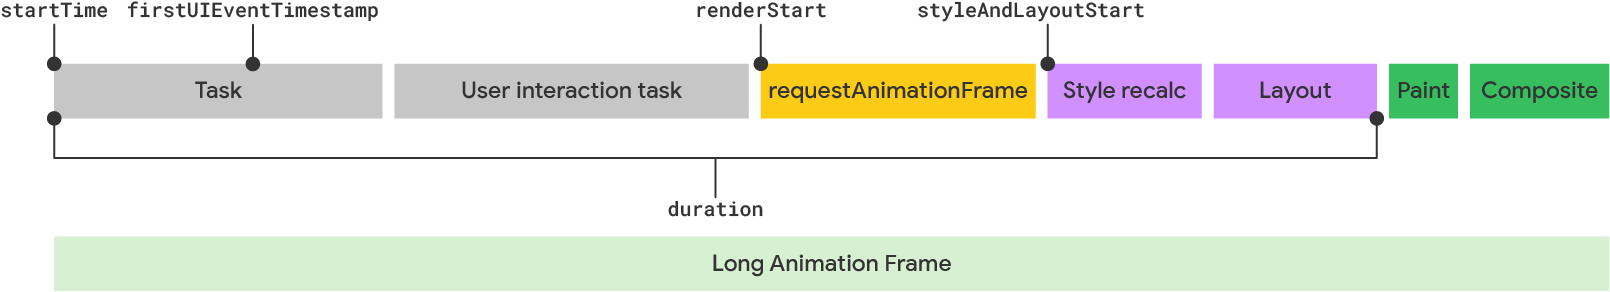 Visualisierung eines langen Animationsframes gemäß dem LoAF-Modell.